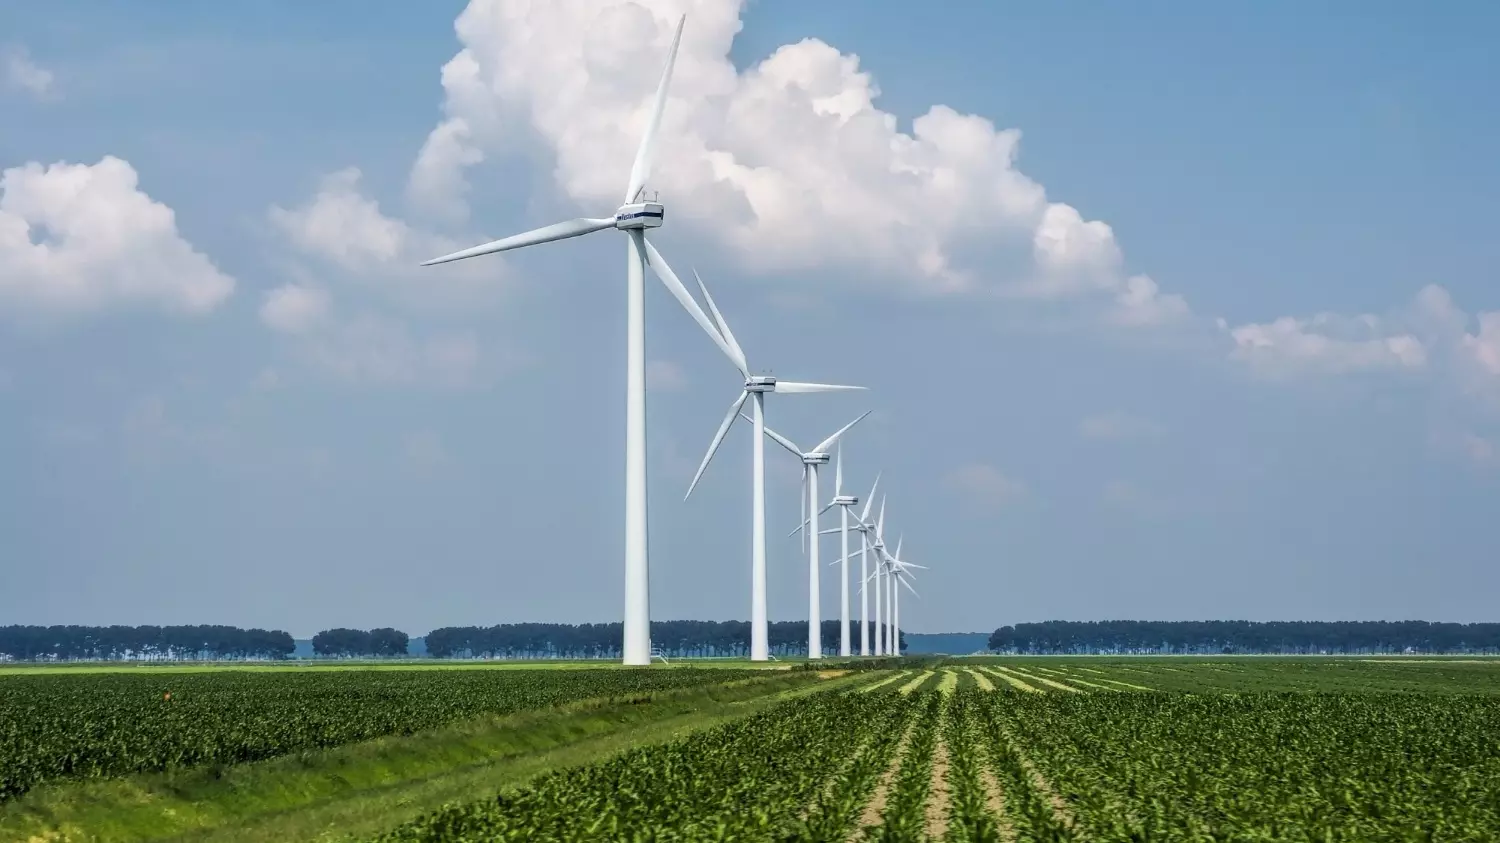 Дизель поможет Дании развивать возобновляемую энергетику